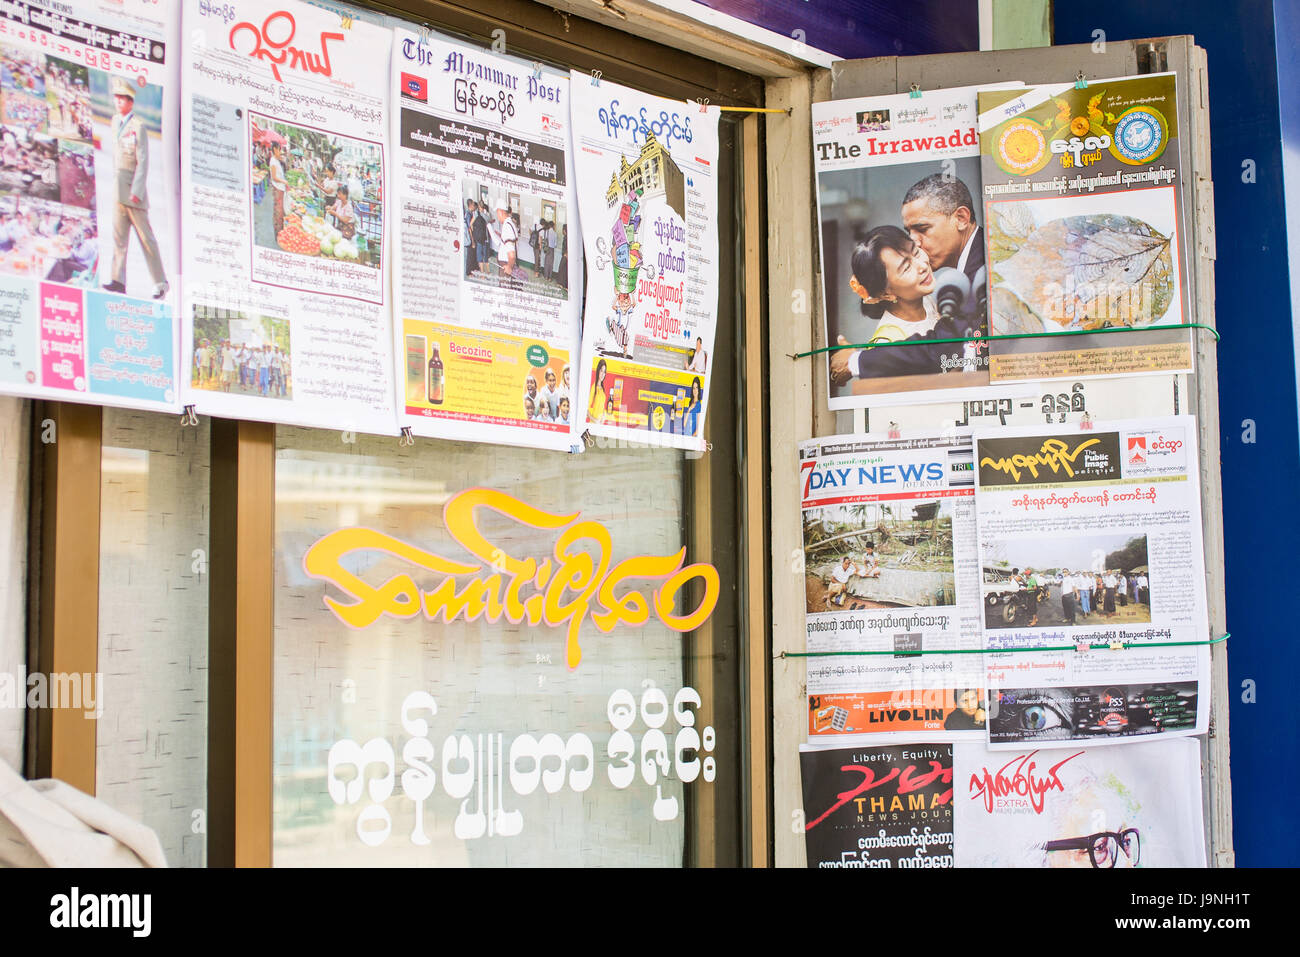 Aung San Suu Kyi und Barack Obama auf der Titelseite einer Zeitung in Inle-See, Myanmar. Stockfoto